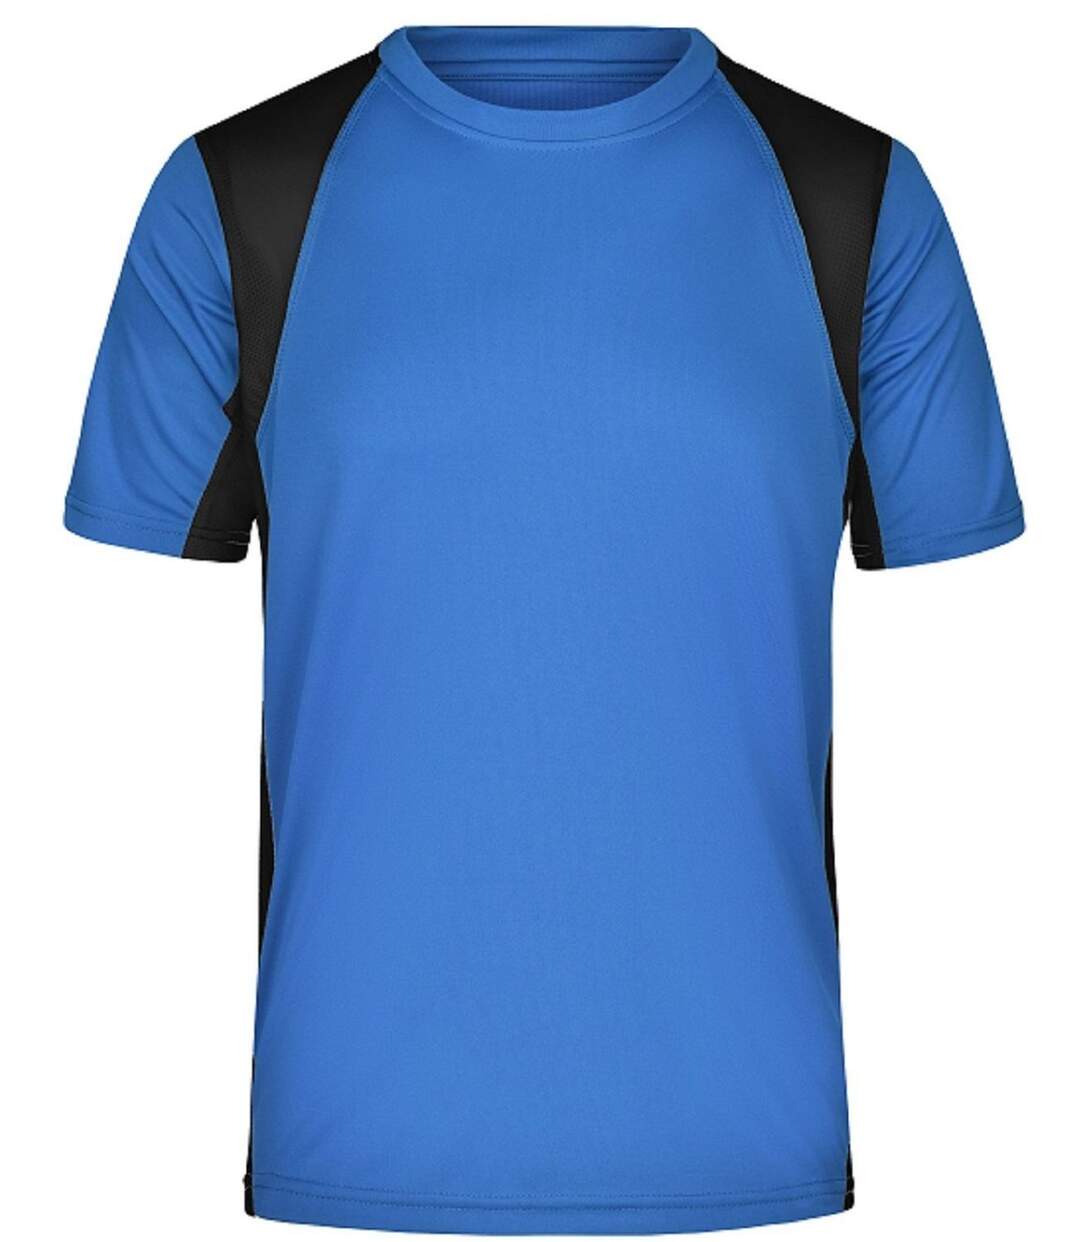 t-shirt running respirant JN306 - bleu roi et noir - HOMME